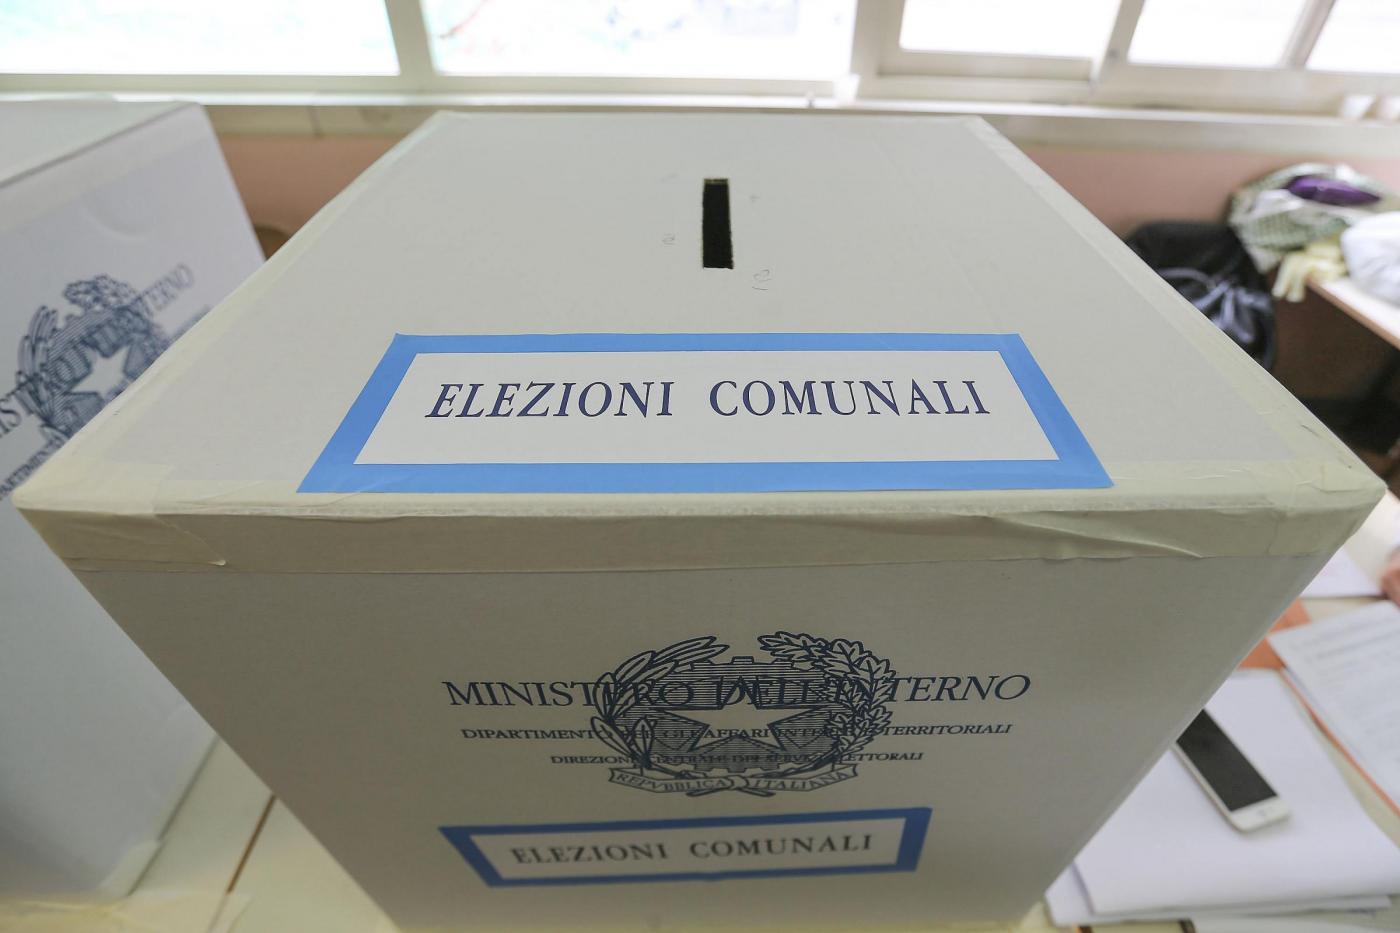 Elezioni Comunali Palermo 2017: data, candidati sindaco e news dell’ultima ora